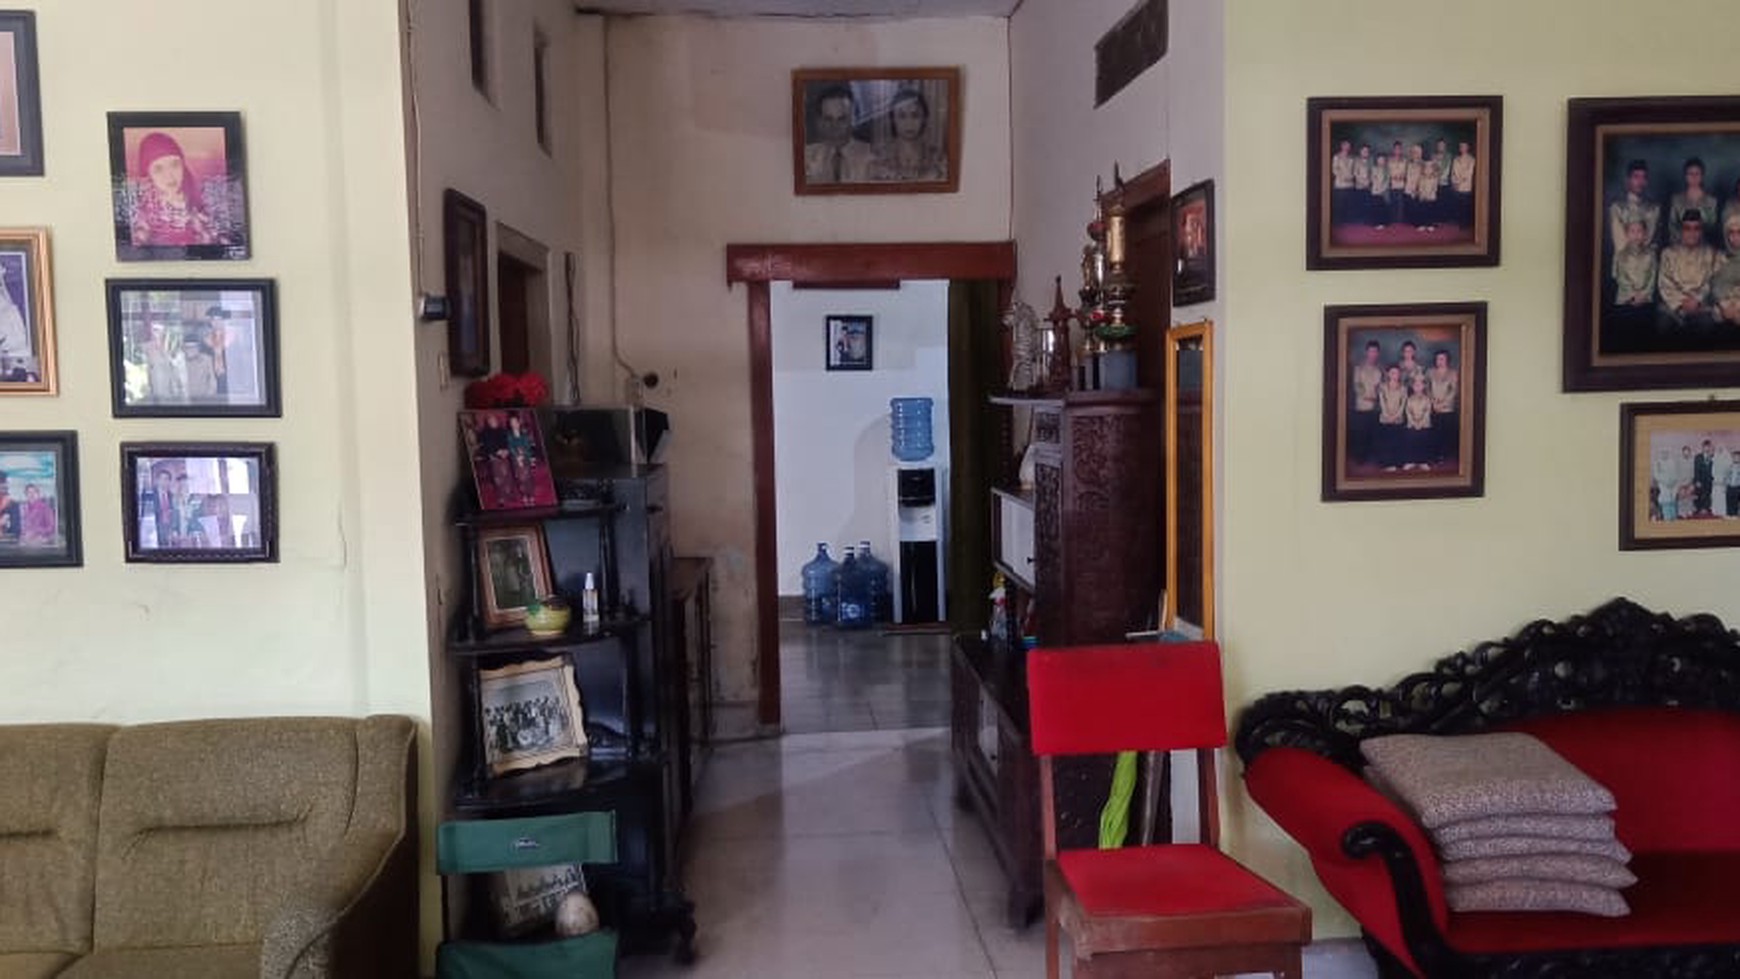 Rumah Tinggal Furnish Cocok Untuk Keluarga di Kota Klaten Jawa Tengah 